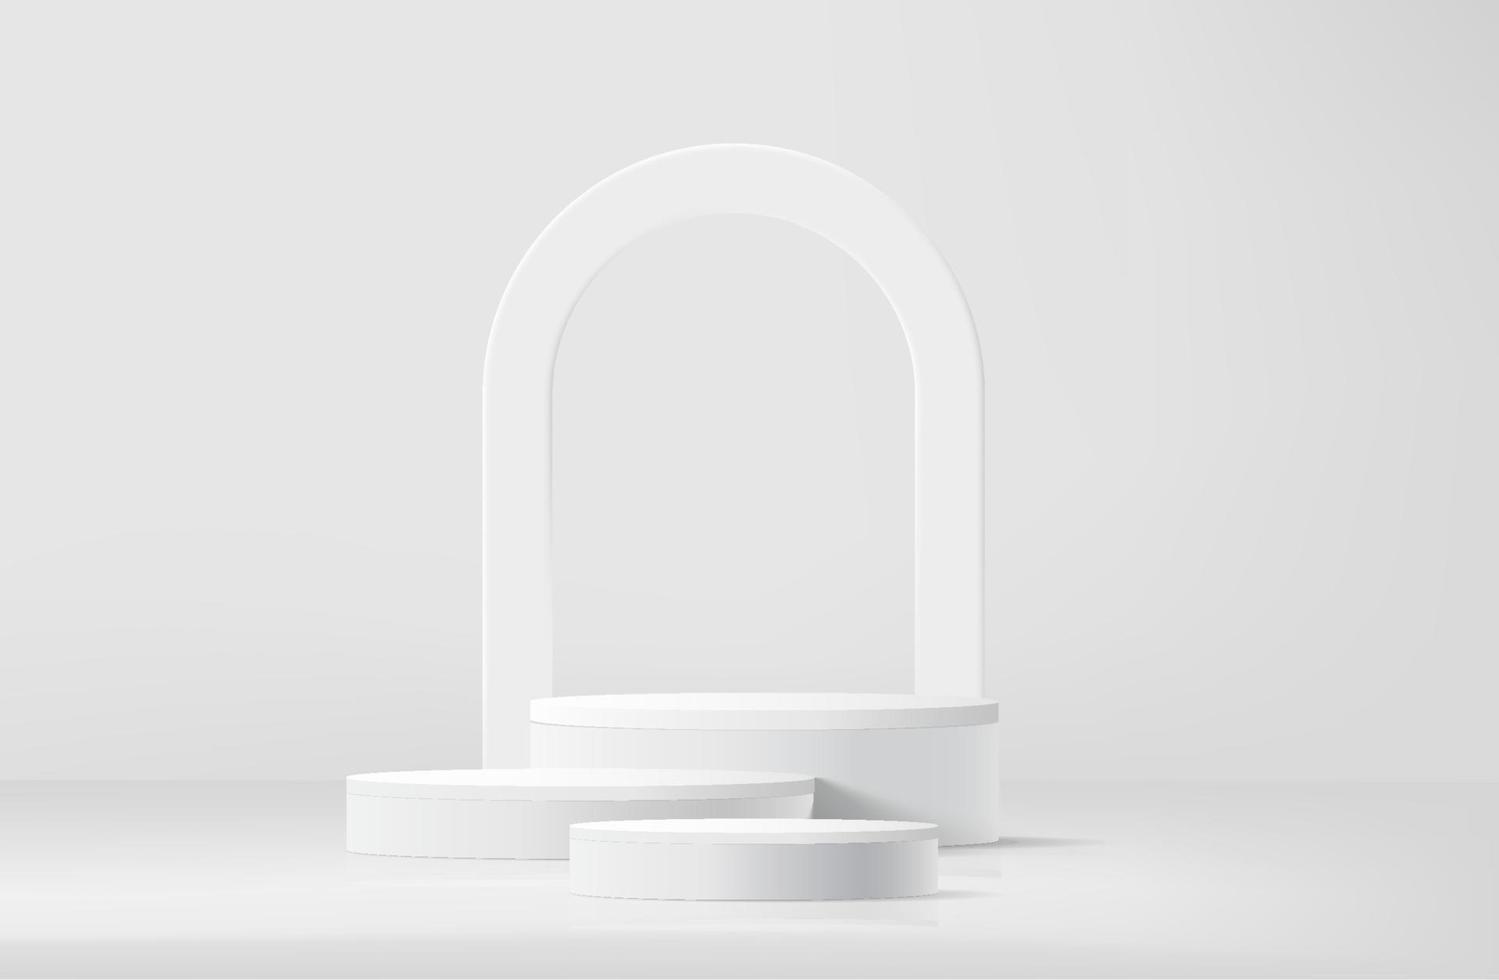 abstrakt vit realistisk 3d cylinder piedestal podium med båge form bakgrund. abstrakt vektor tolkning geometrisk plattform med skugga täcka över. produkt visa presentation. minimal scen.